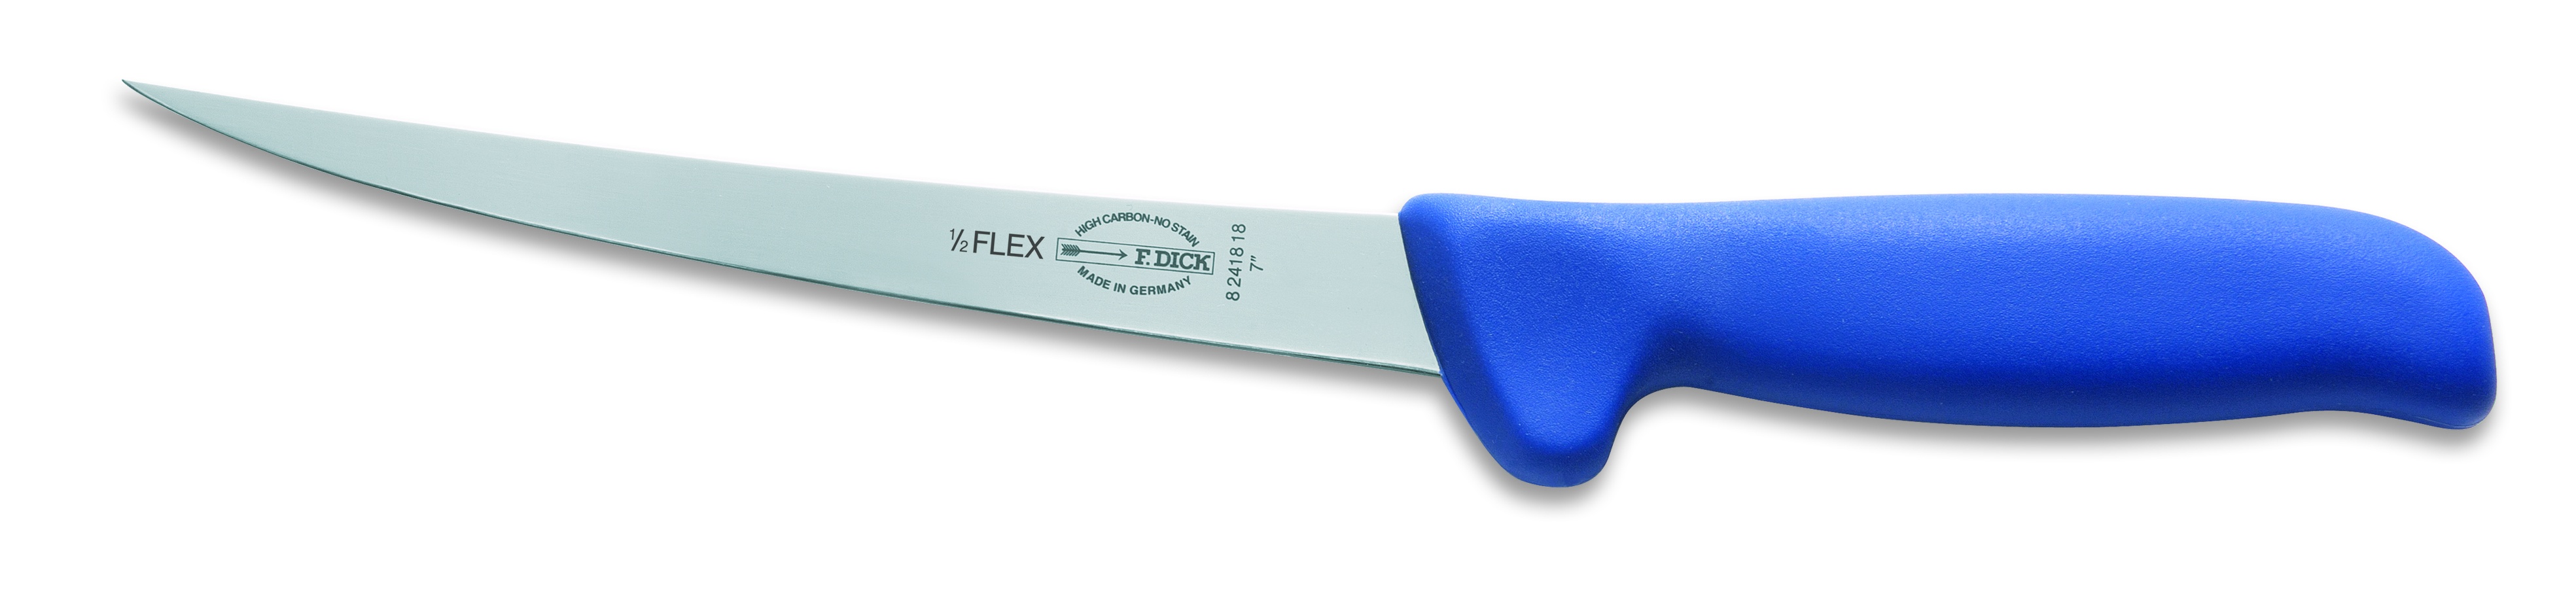 Vykosťovací / filetovací nůž poloflexibilní v délce 18 cm